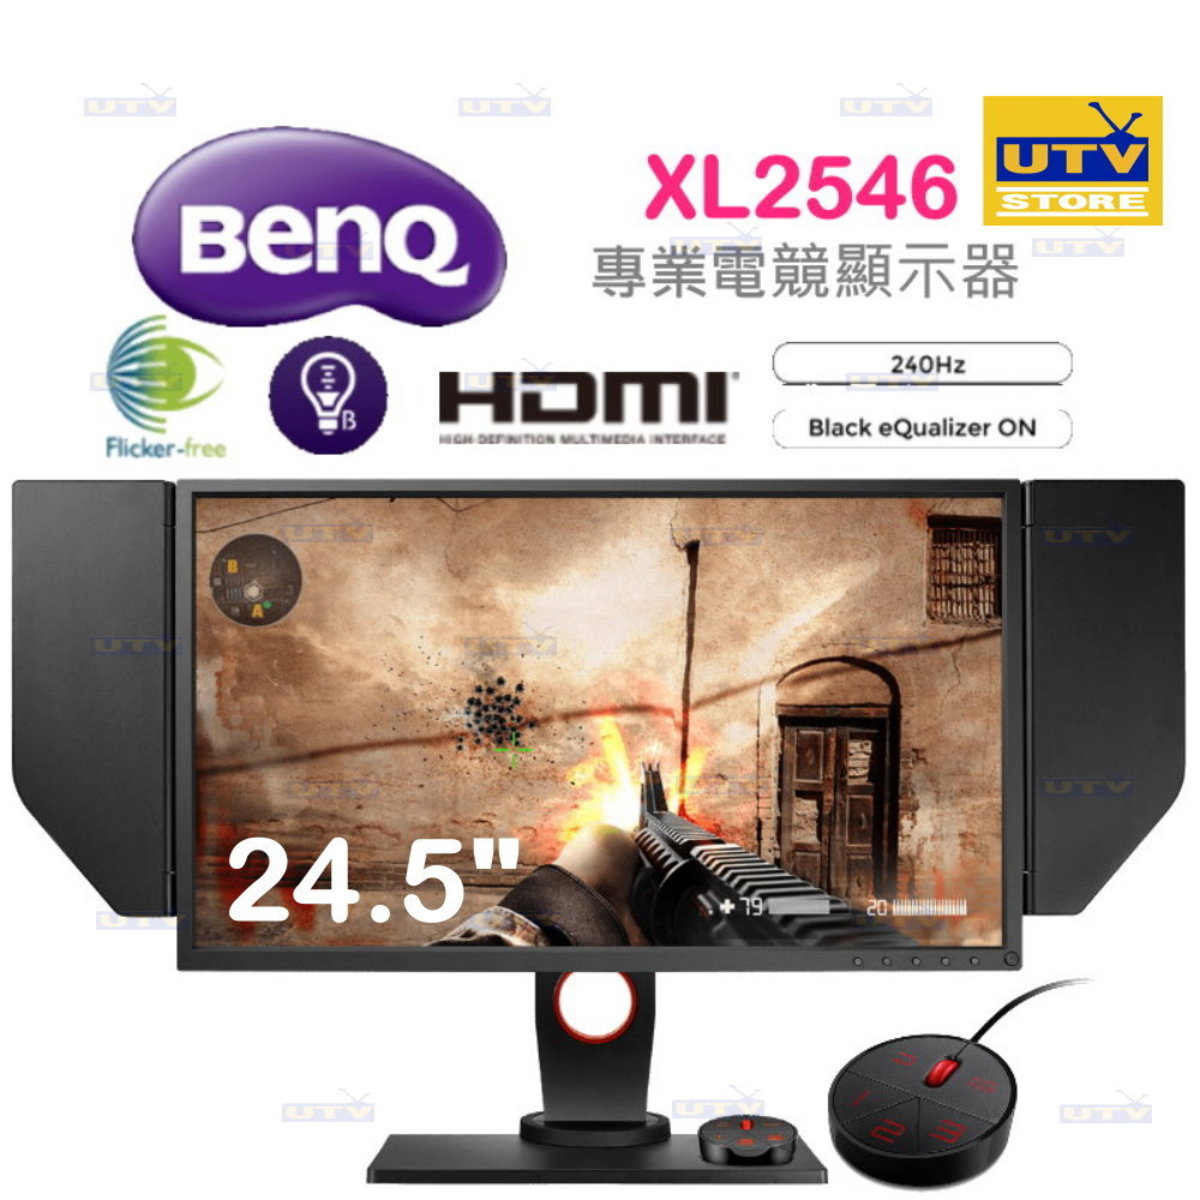 Benq Xl2546 24 5 Zowie專業電竸顯示器 香港電視hktvmall 網上購物